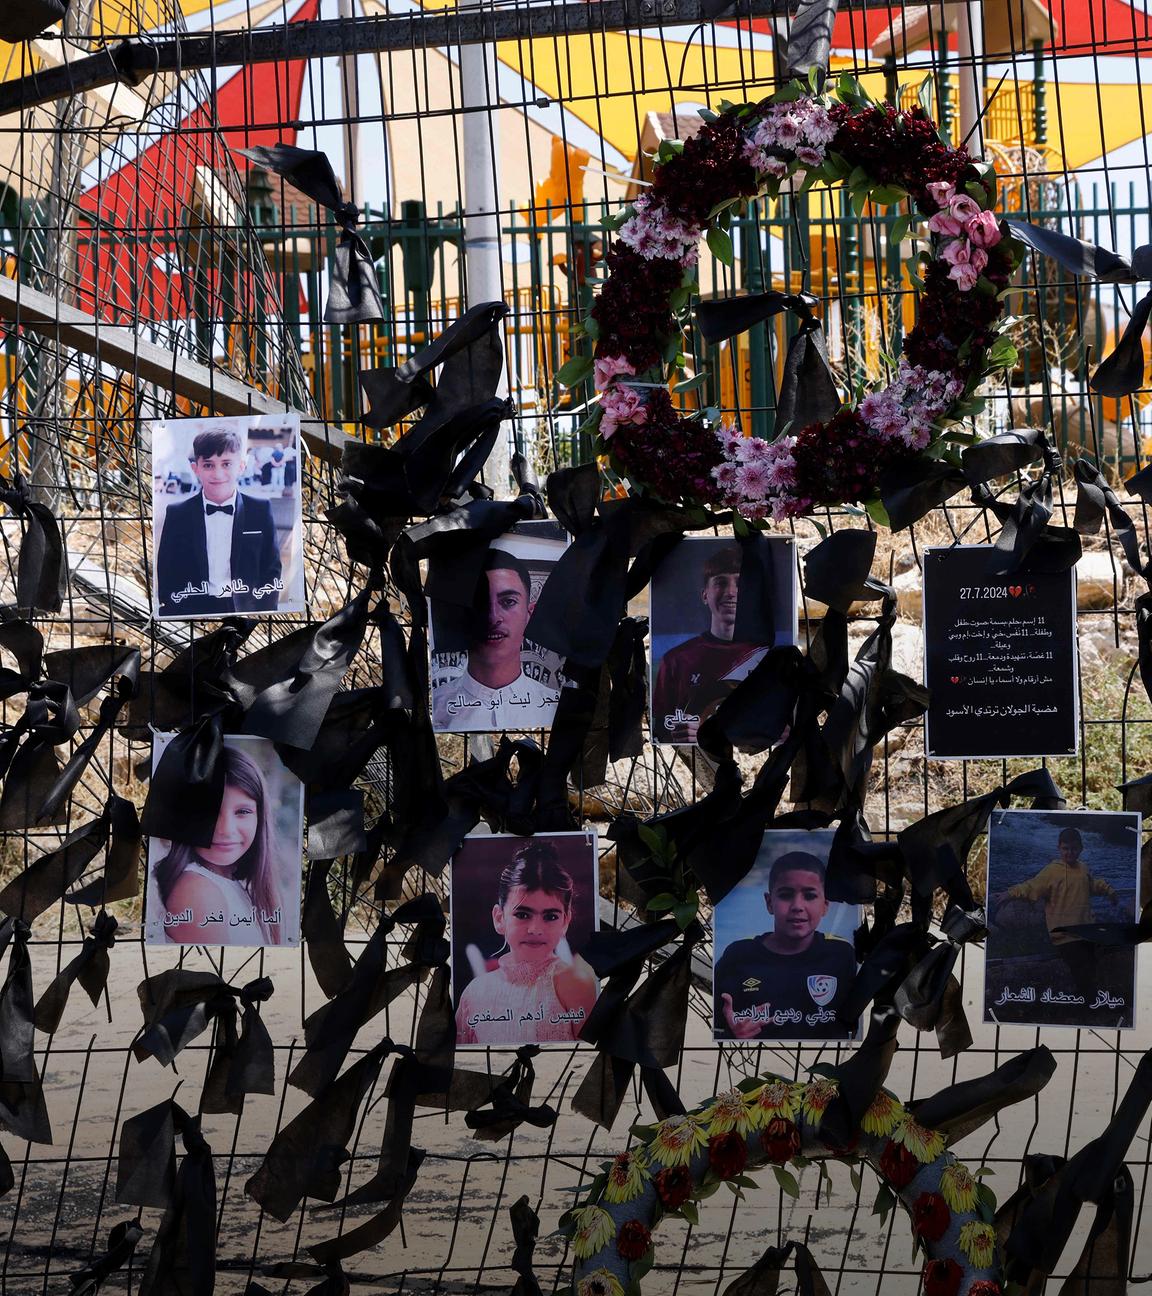 Die Bilder der bei einem Raketenanschlag auf den Golanhöhen getöteten Kinder hängen am Zaun eines Fußballplatzes